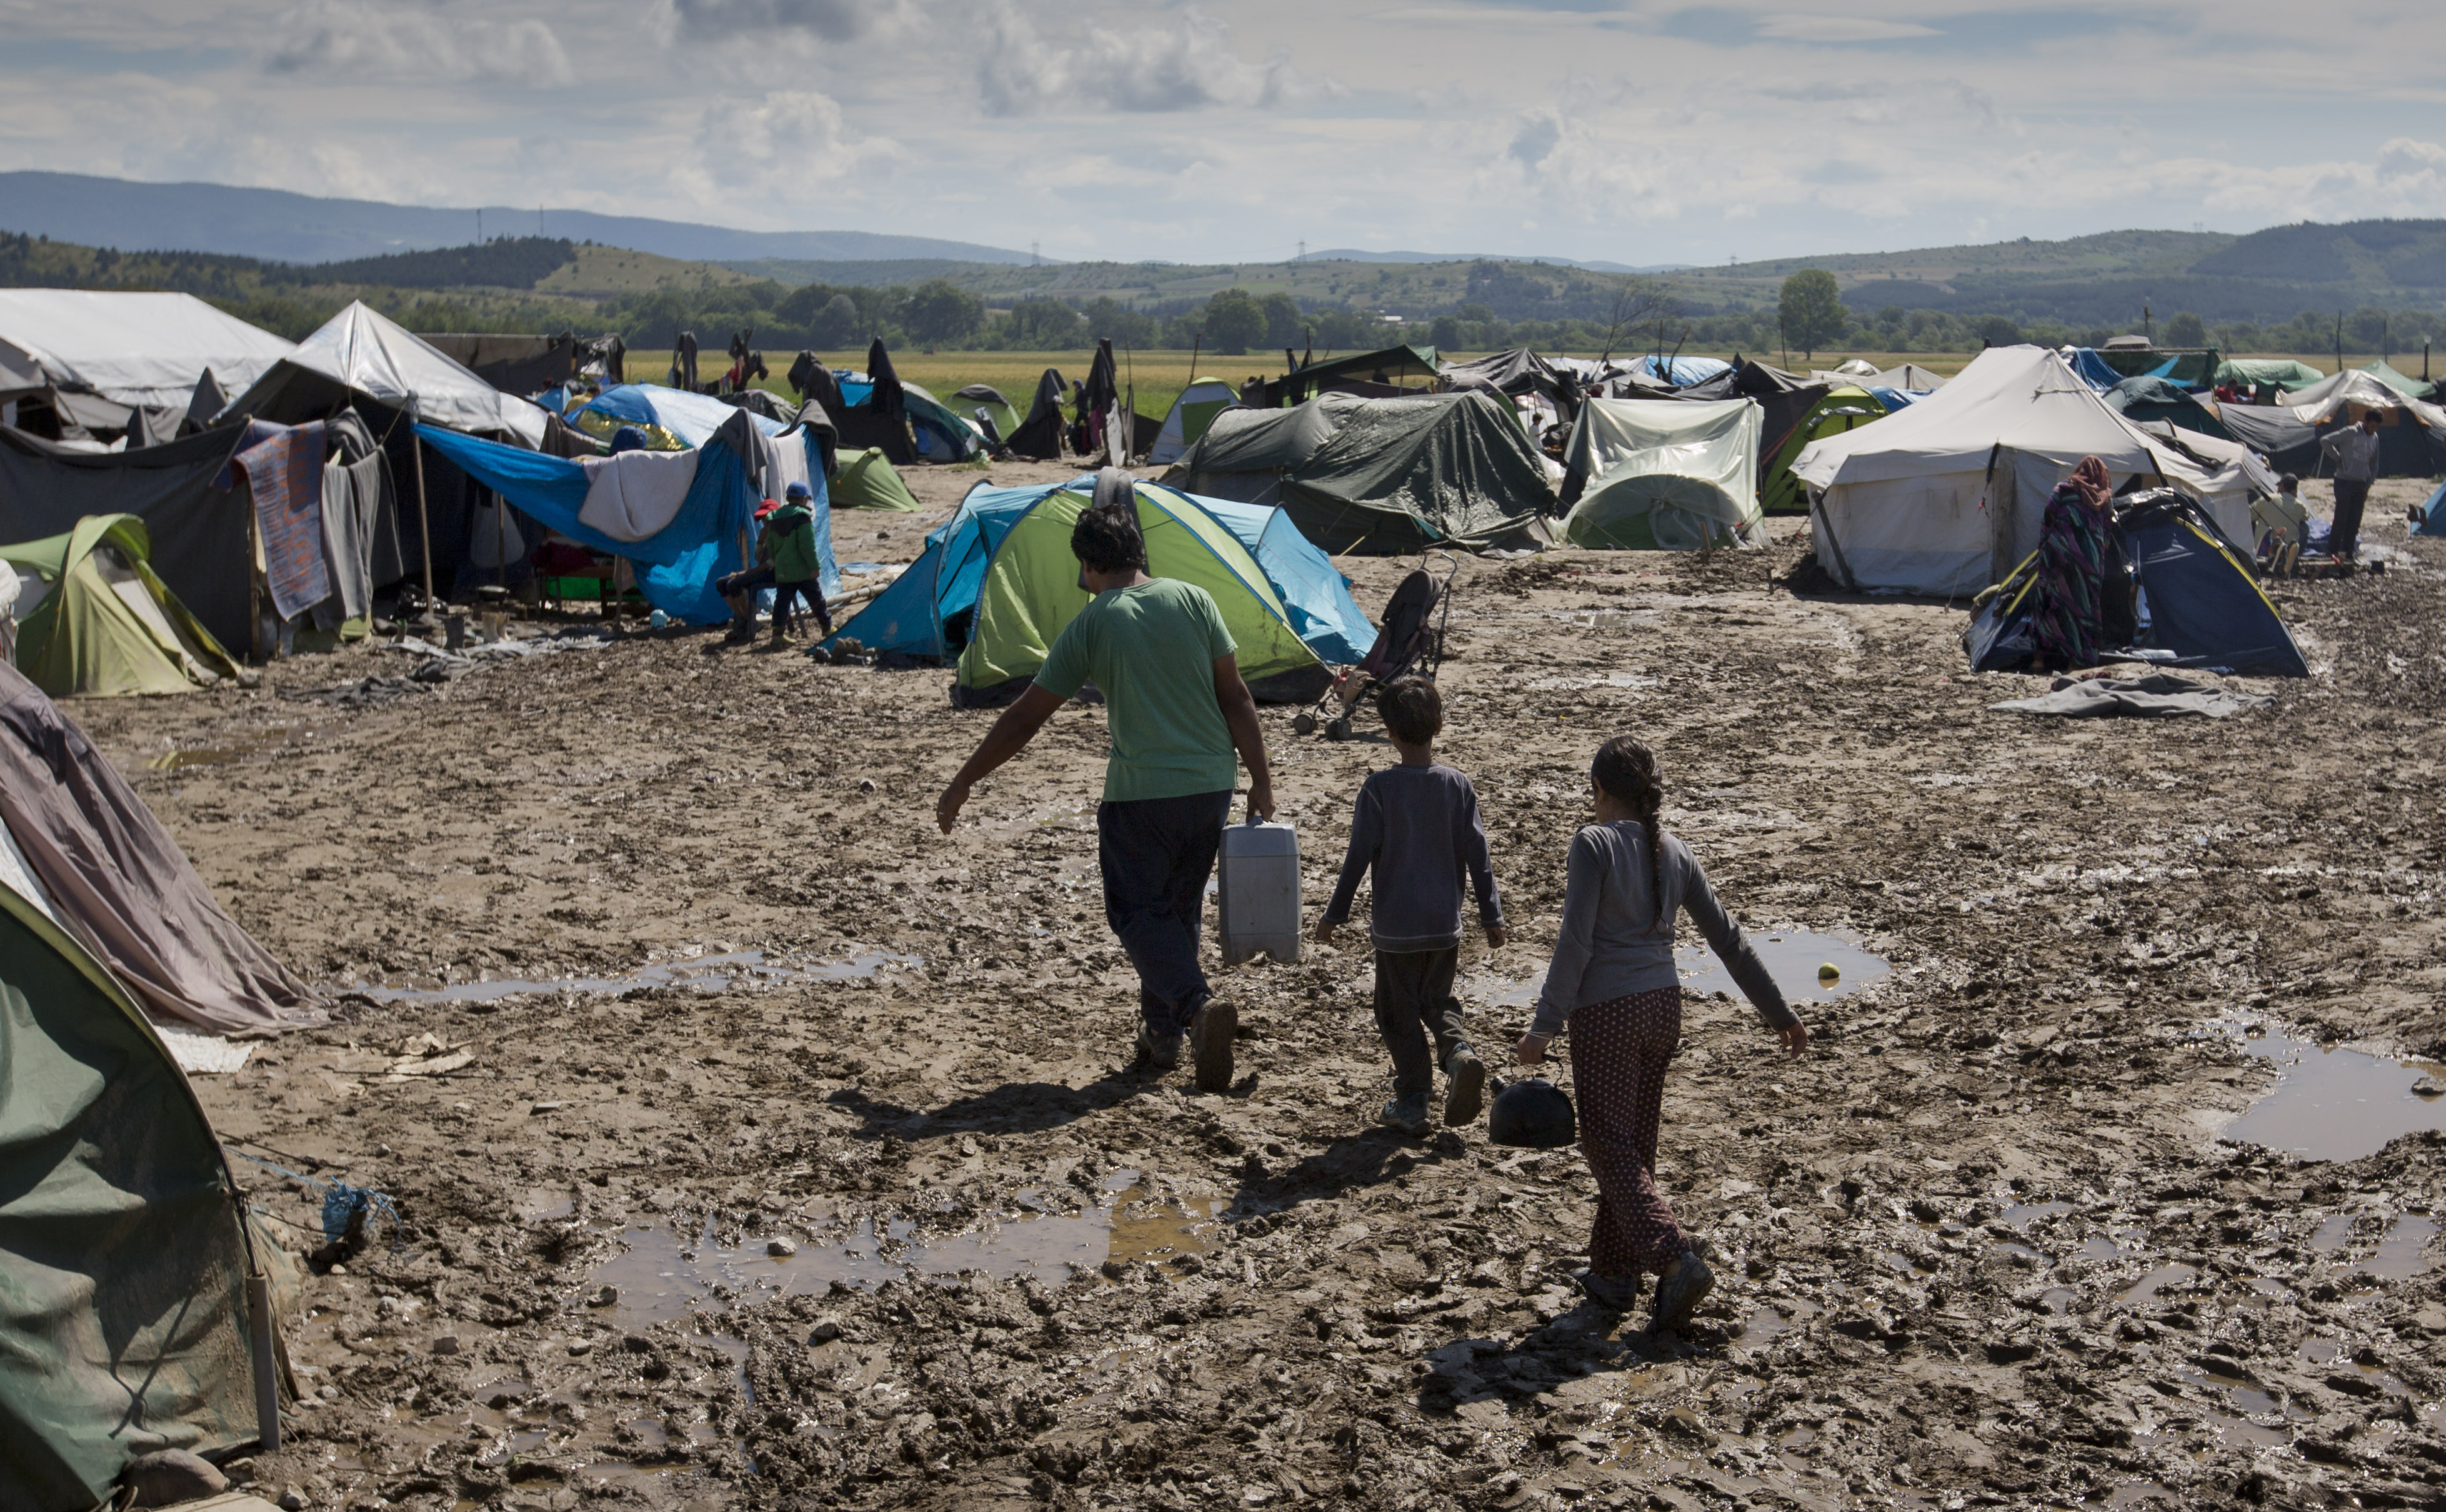 Grecia a inceput EVACUAREA refugiatilor din tabara de la Idomeni. Mesajul de pe autocarele ce au transportat 800 de migranti - Imaginea 2